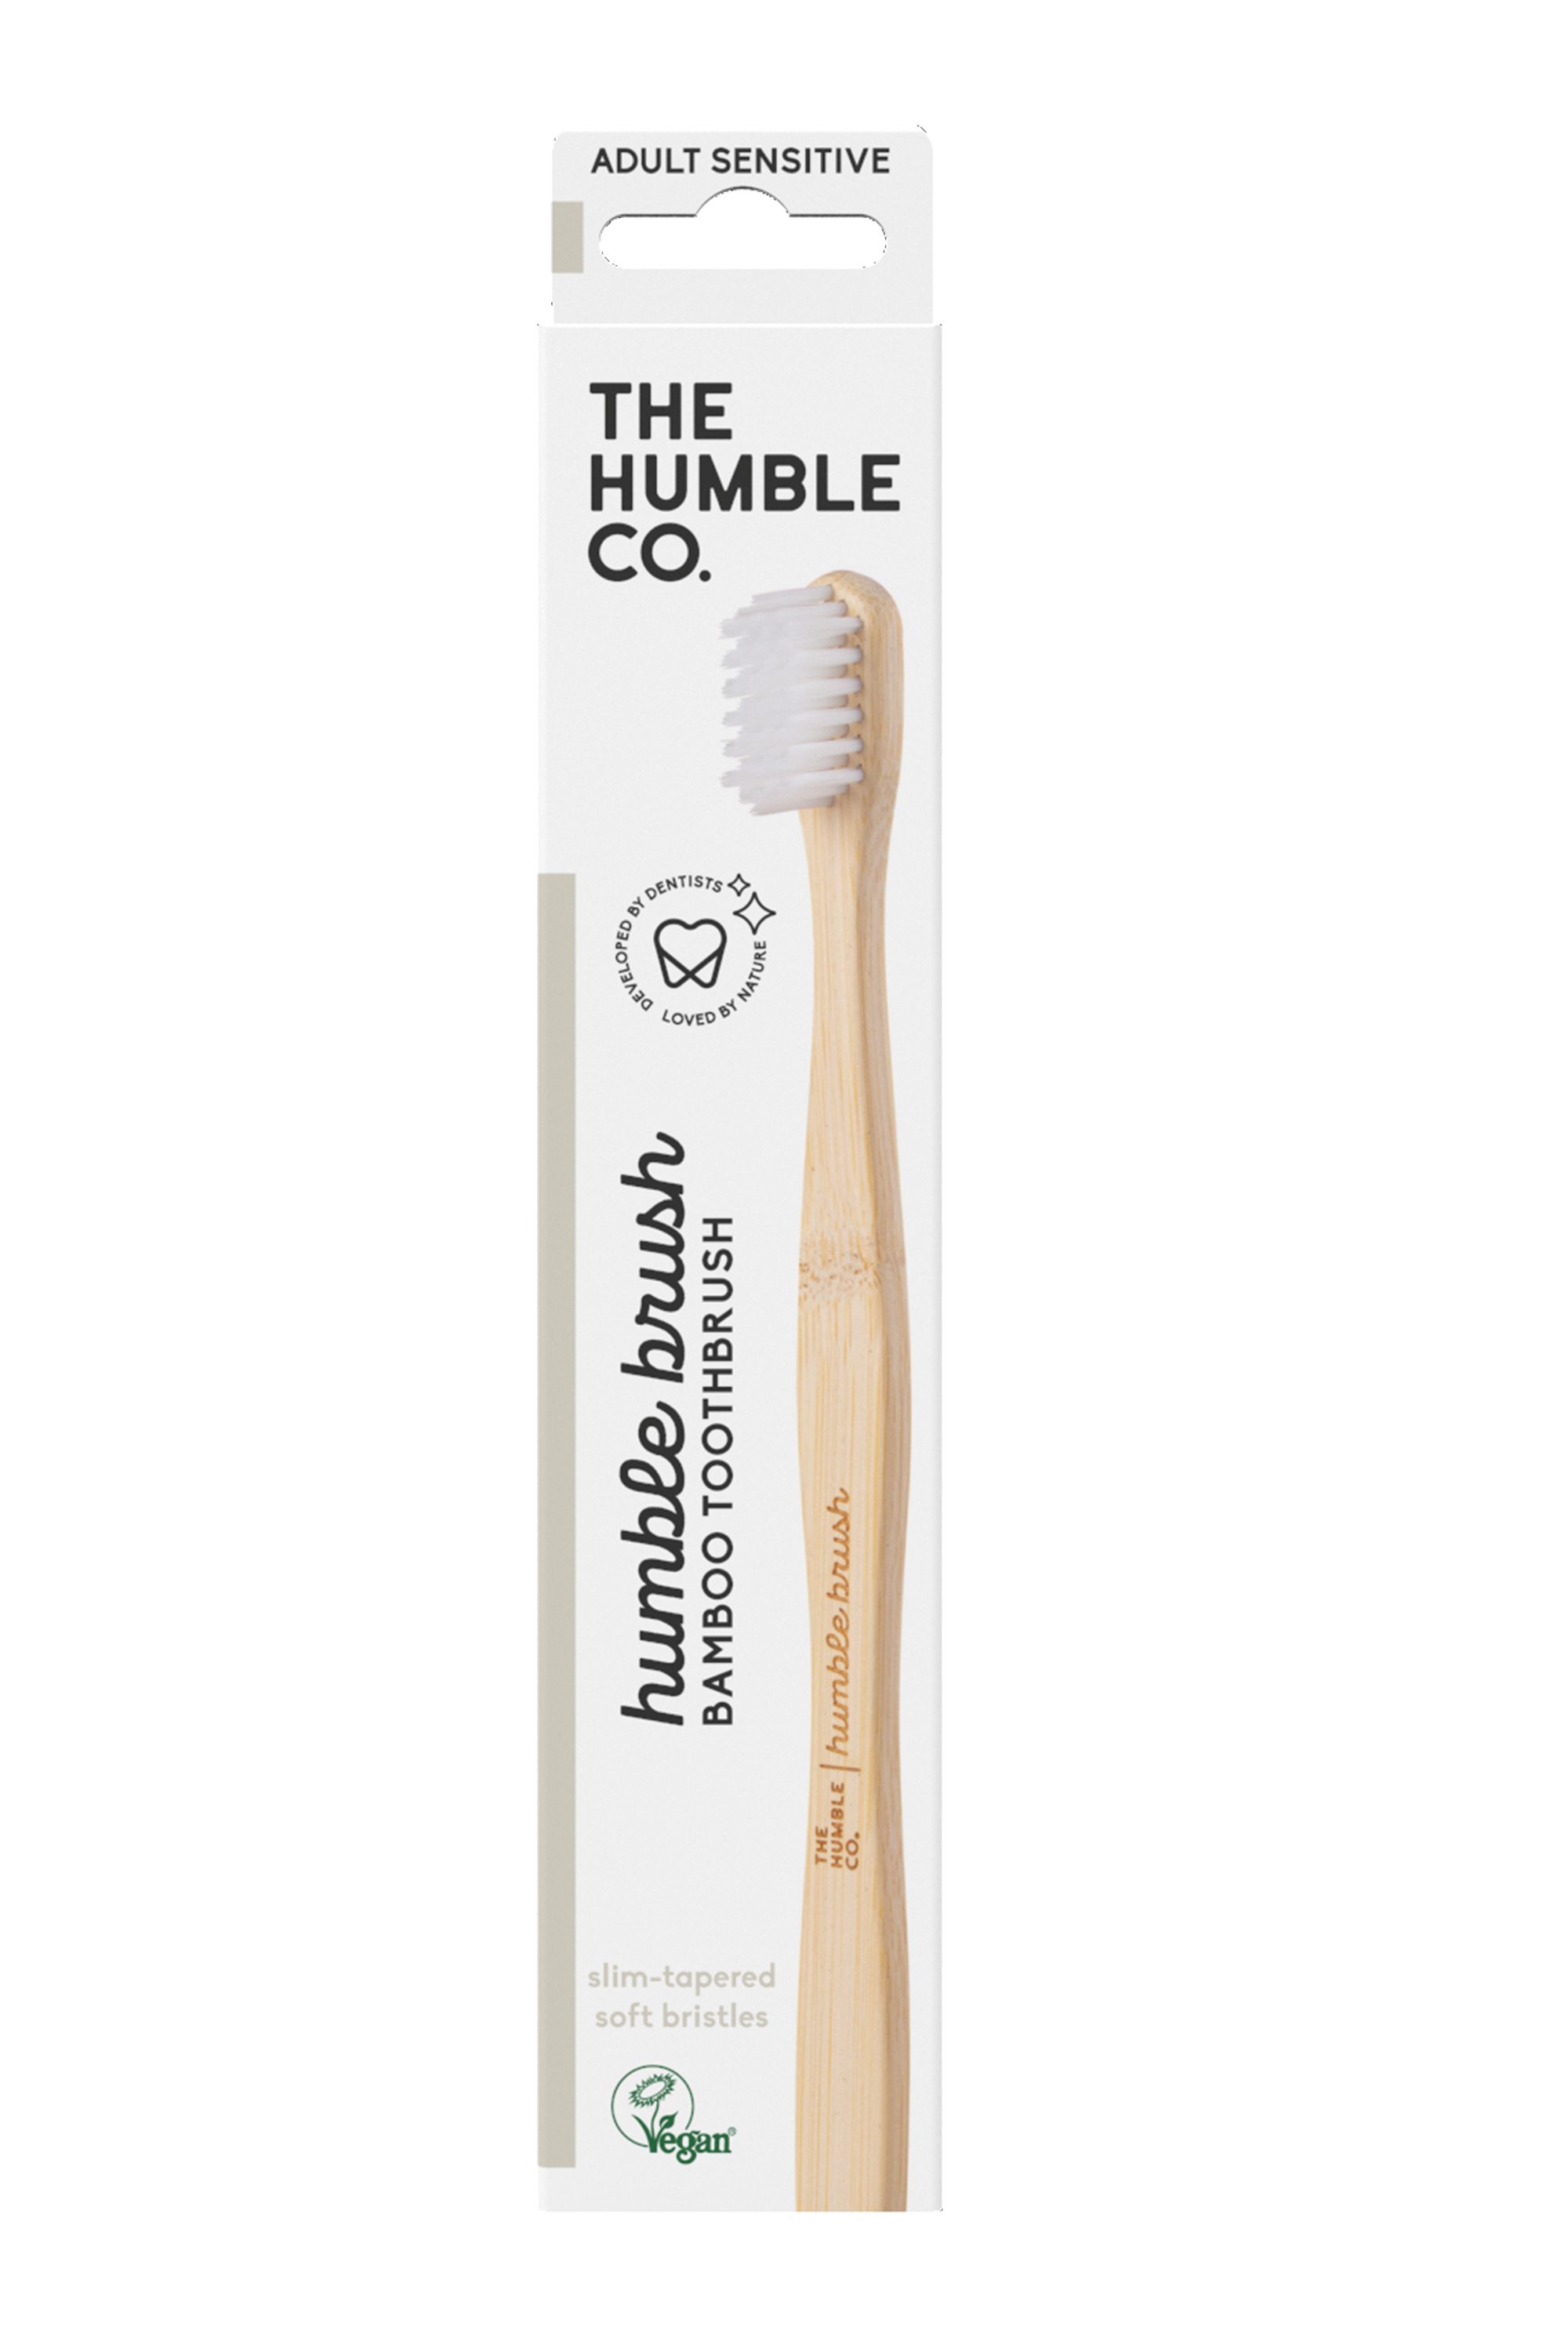 The Humble Co. Humble Brush Adult Sensitive, White, 1 stk